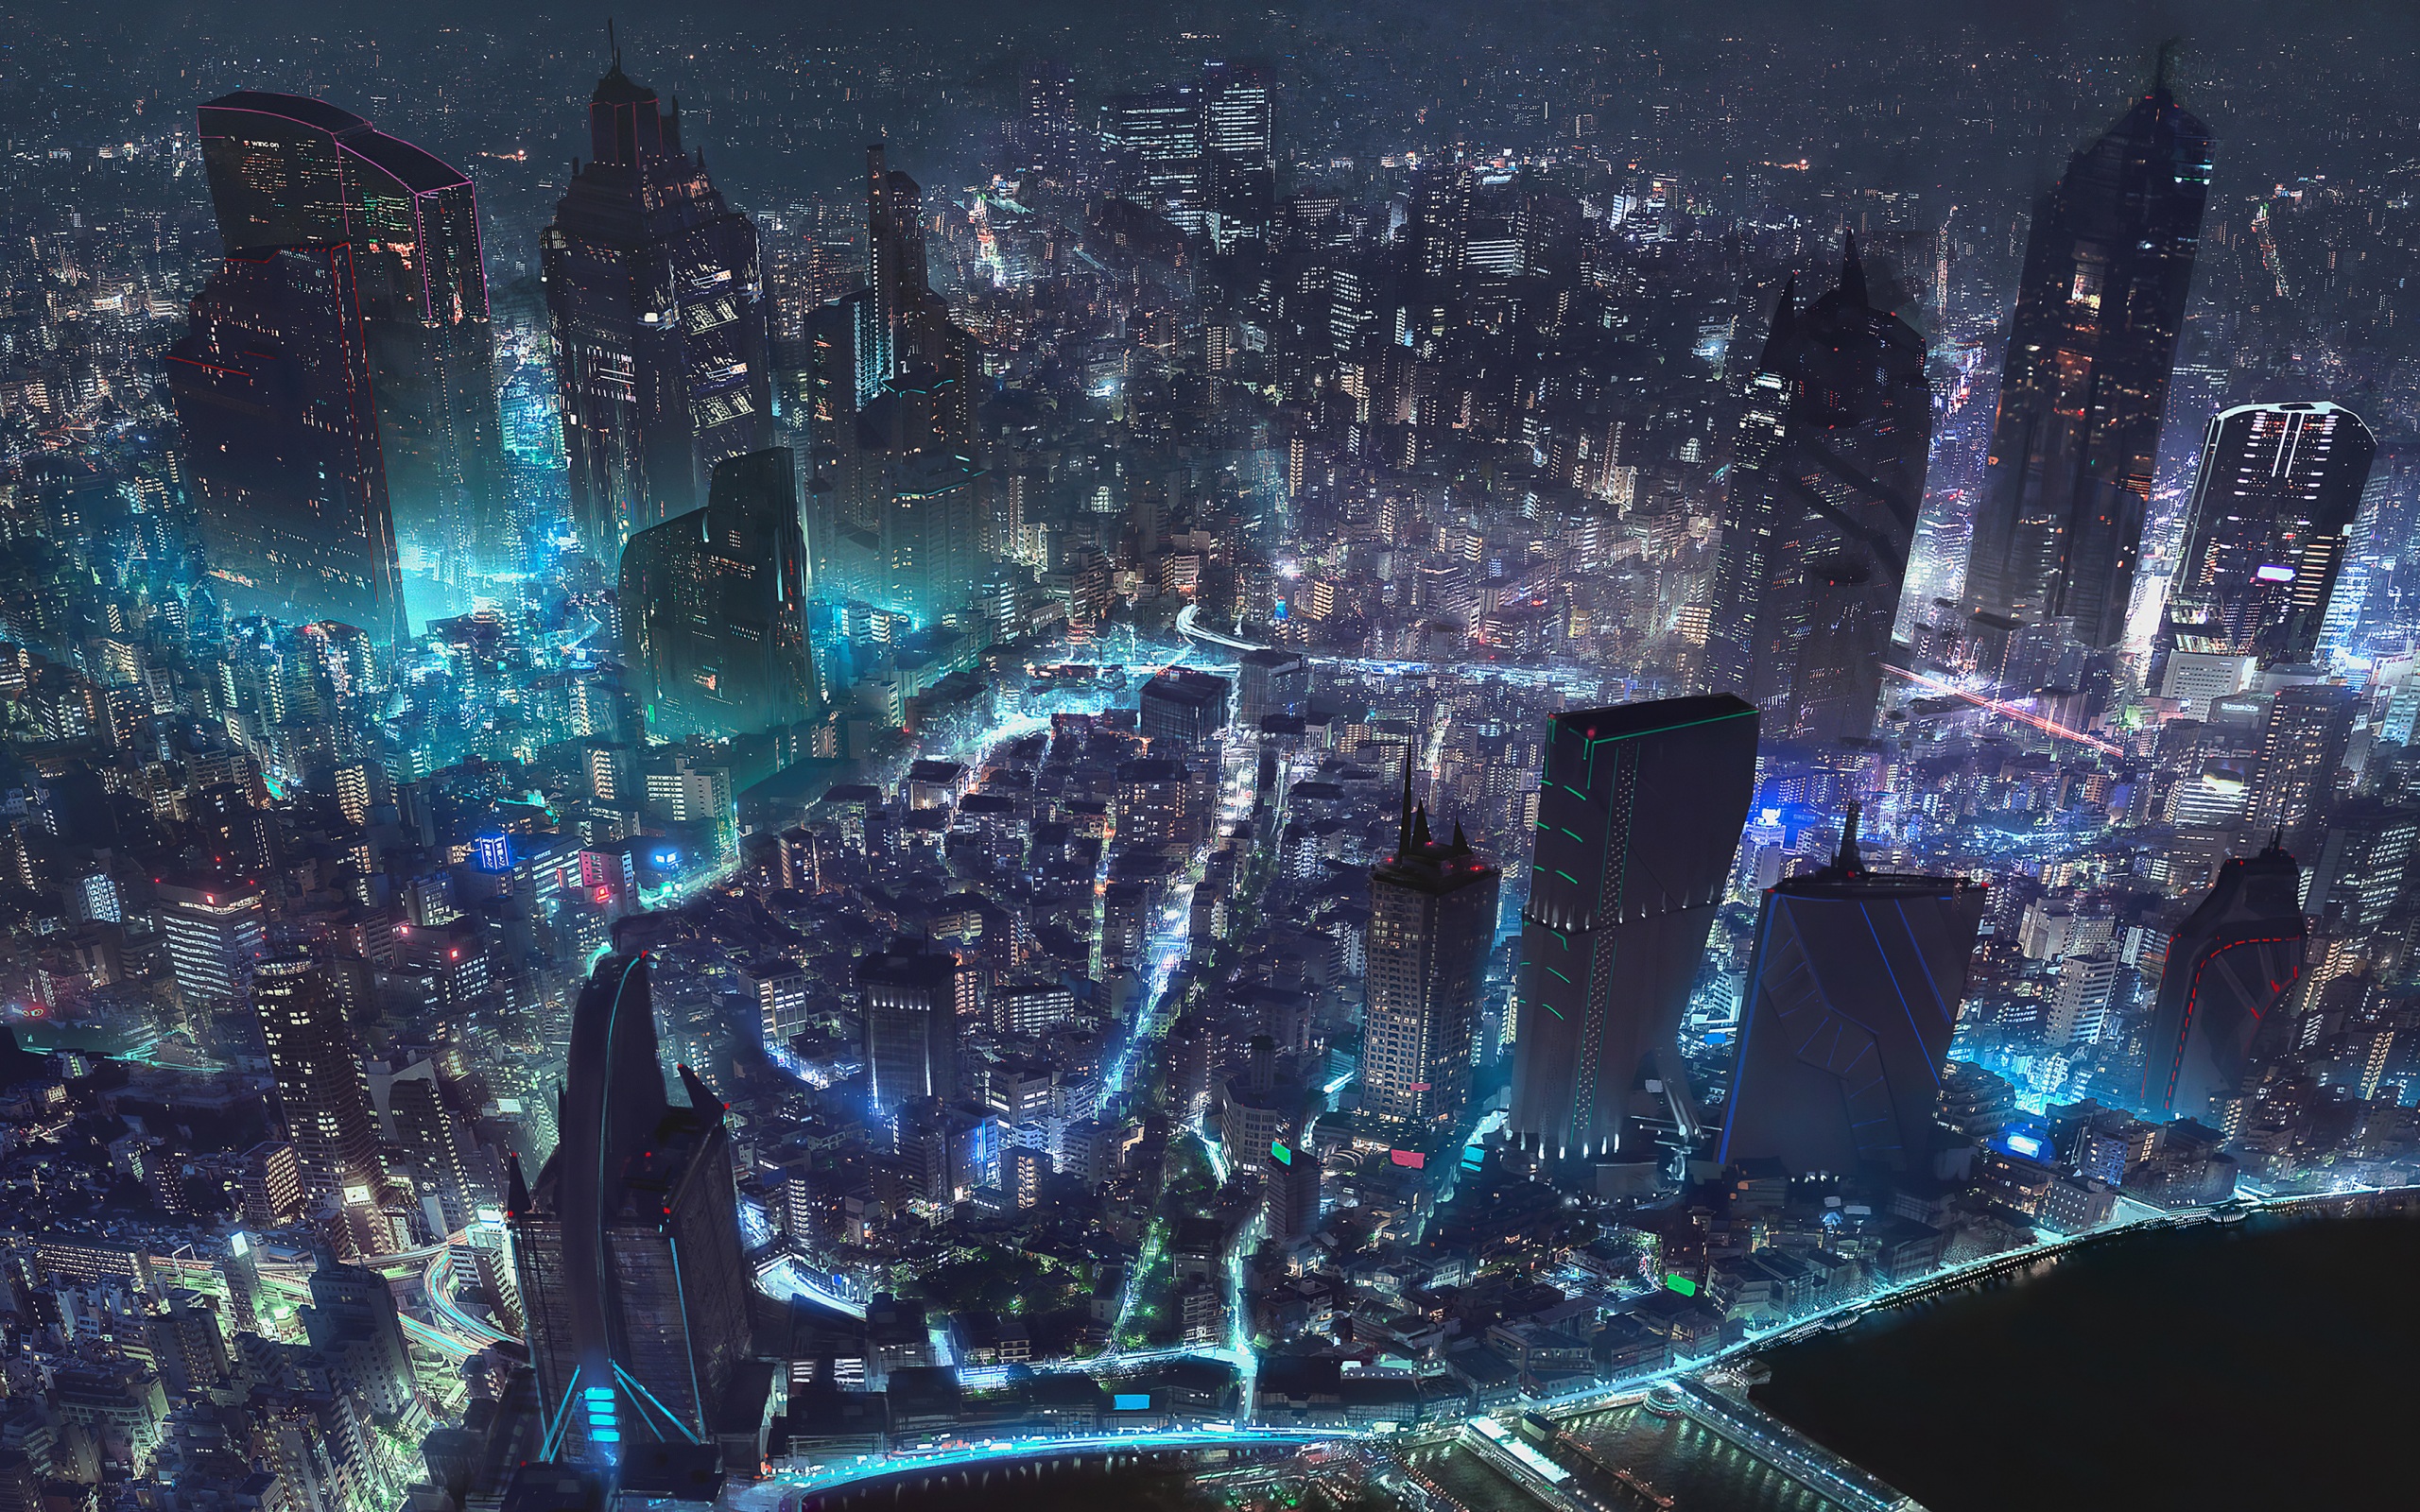 Cyberpunk City World Map: Bạn đang tìm kiếm một thế giới tương lai hoàn toàn mới, với những kỹ thuật hiện đại và những thị trấn vô cùng độc đáo? Hãy xem hình ảnh liên quan đến Cyberpunk City World Map để cảm nhận được! Chúng tôi xin giới thiệu một thế giới đầy màu sắc, nơi bạn có thể khám phá những thị trấn tuyệt đẹp và cảm nhận được sức mạnh của khoa học kỹ thuật đỉnh cao.